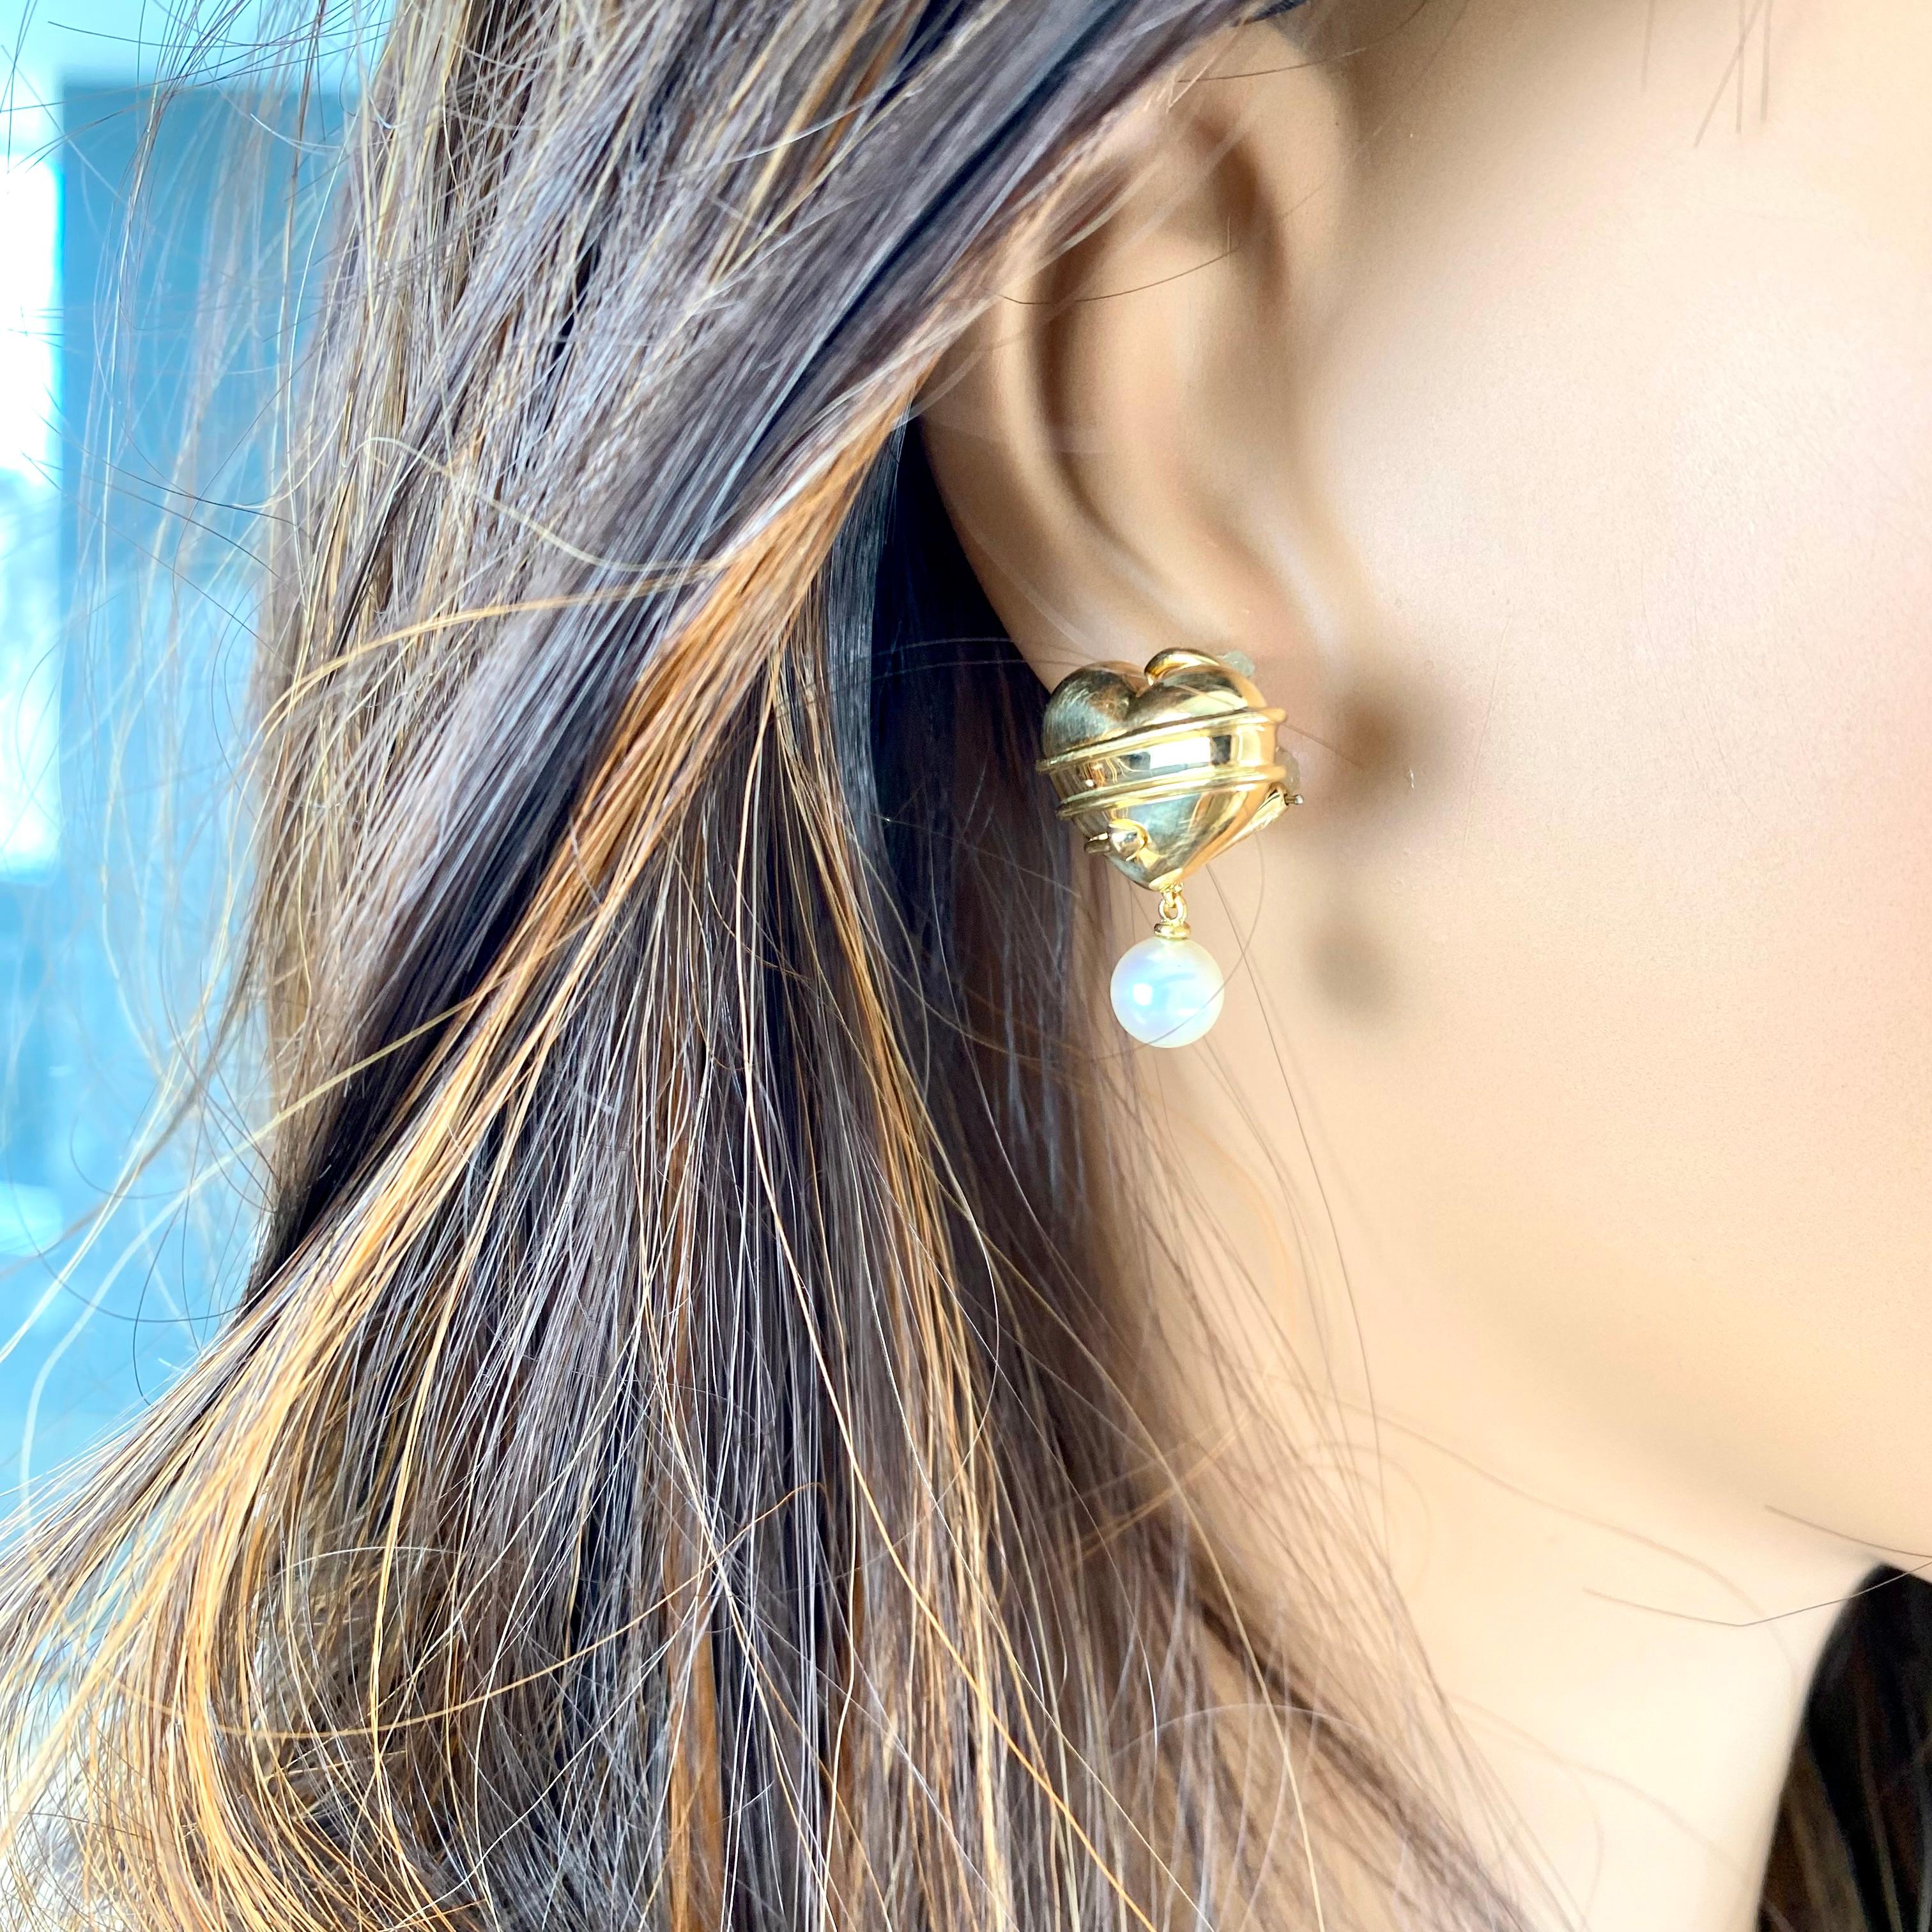 Der Inbegriff von Eleganz und Raffinesse: die Tiffany & Co. 18k Yellow Gold Cupid Pearl Drop French-Clip Earrings. Diese exquisiten Ohrringe wurden mit viel Liebe zum Detail gefertigt und sind eine zeitlose Ergänzung für jede Schmucksammlung.
Jeder